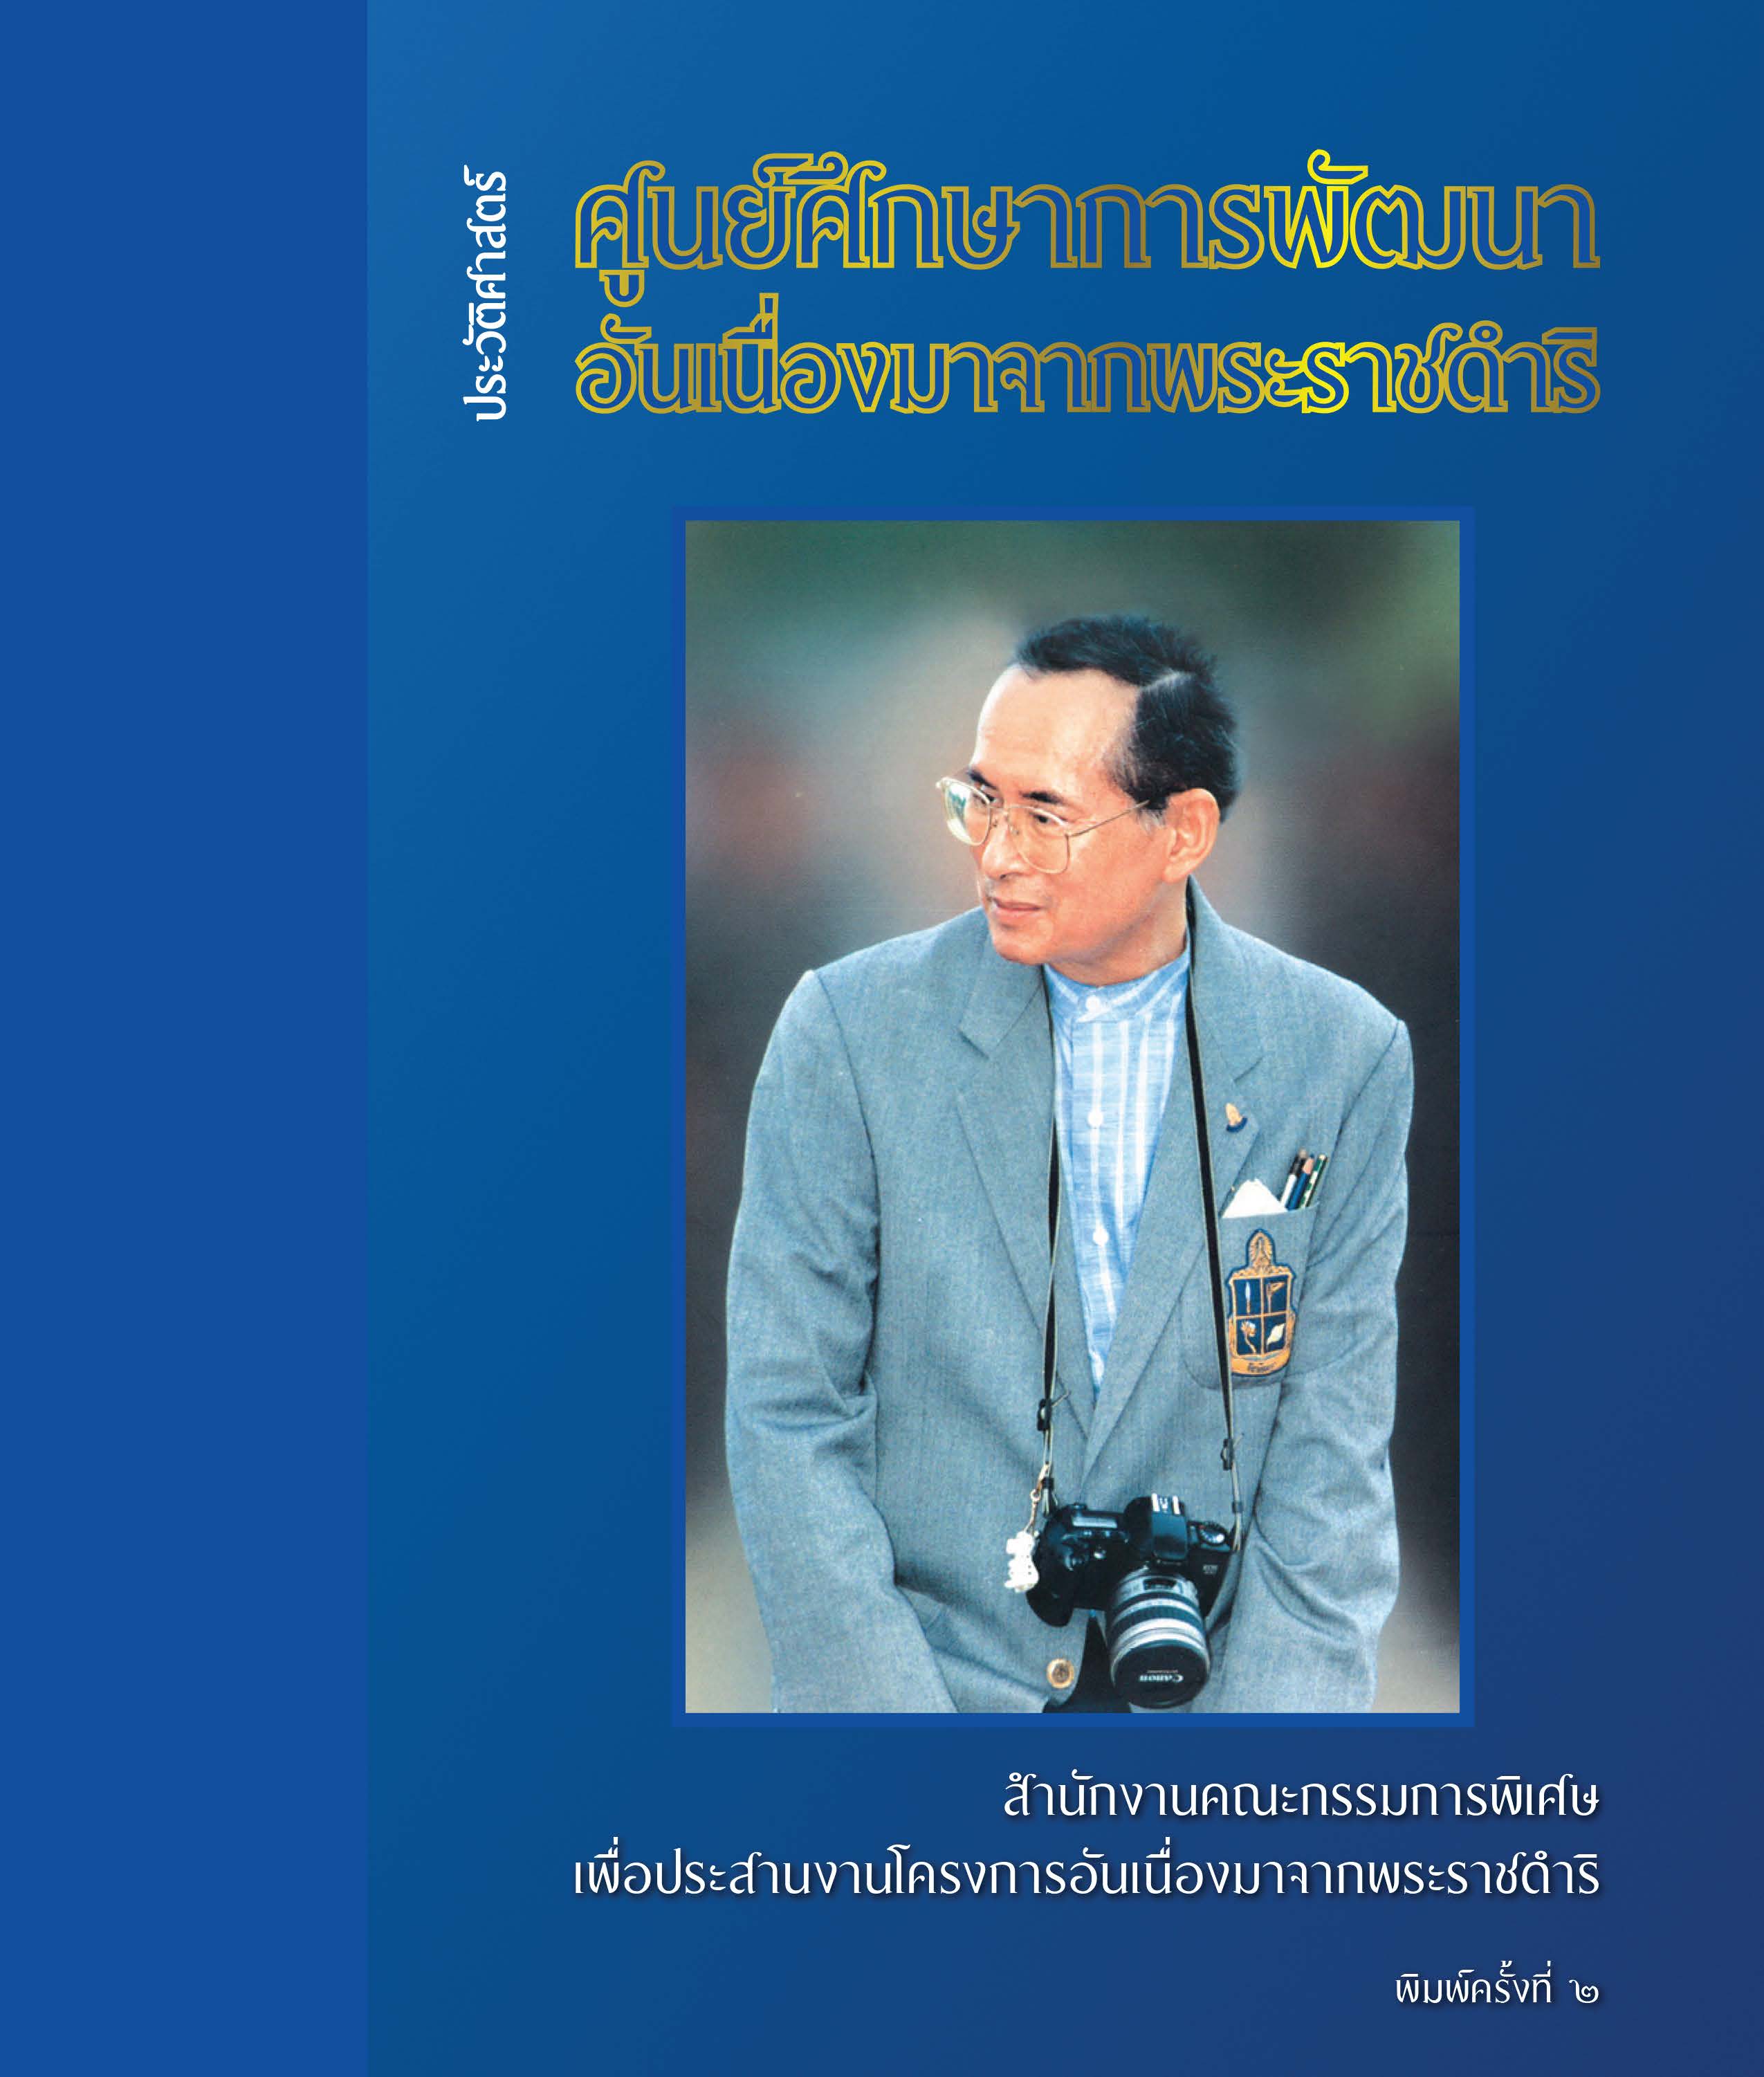 ประวัติศาสตร์ศูนย์ศึกษาการพัฒนาอันเนื่องมาจากพระราชดำริ ฉบับภาษาไทย จัดพิมพ์ครั้งที่ 2